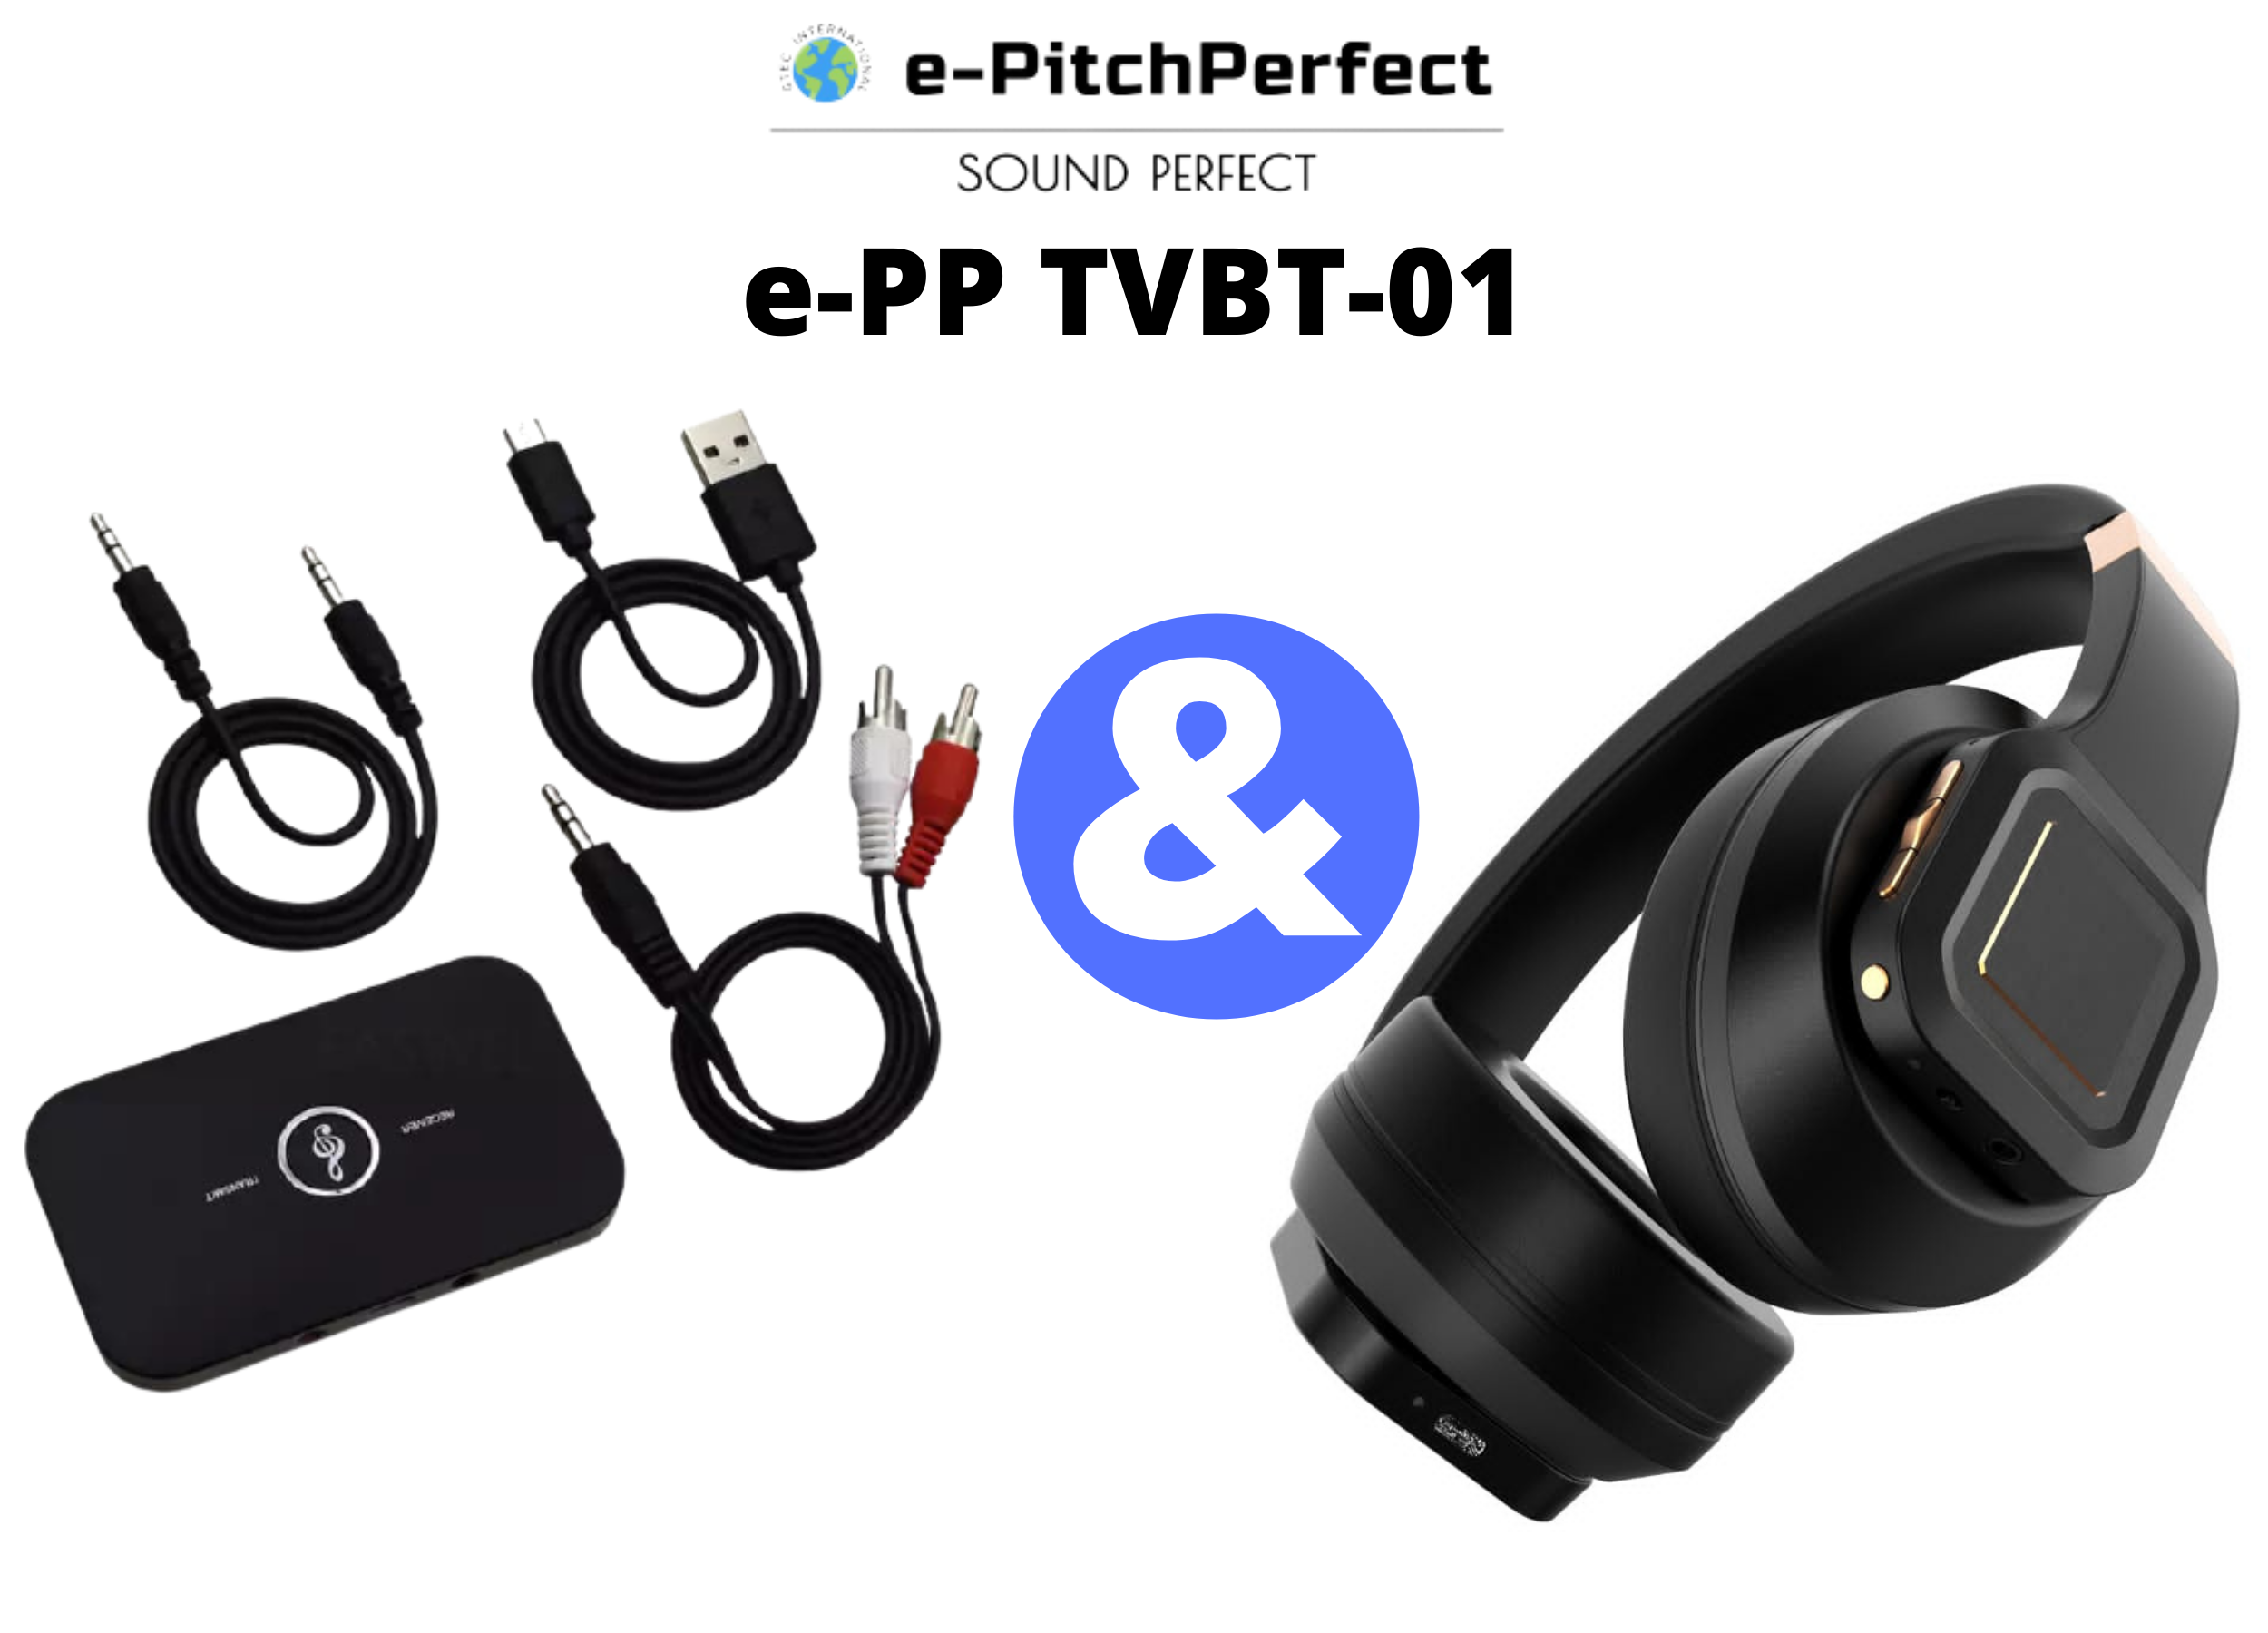 e-PP TVBT-01: TV EAR Bluetooth osobní TV poslechový systém se skládá z Bluetooth sluchátek e-PP - ANC-BT & BT Tx/Rx Bluetooth audio vysílač / přijímač. Bezpečné použití s většinou typů sluchadel. Navrženo a zkonstruováno v USA